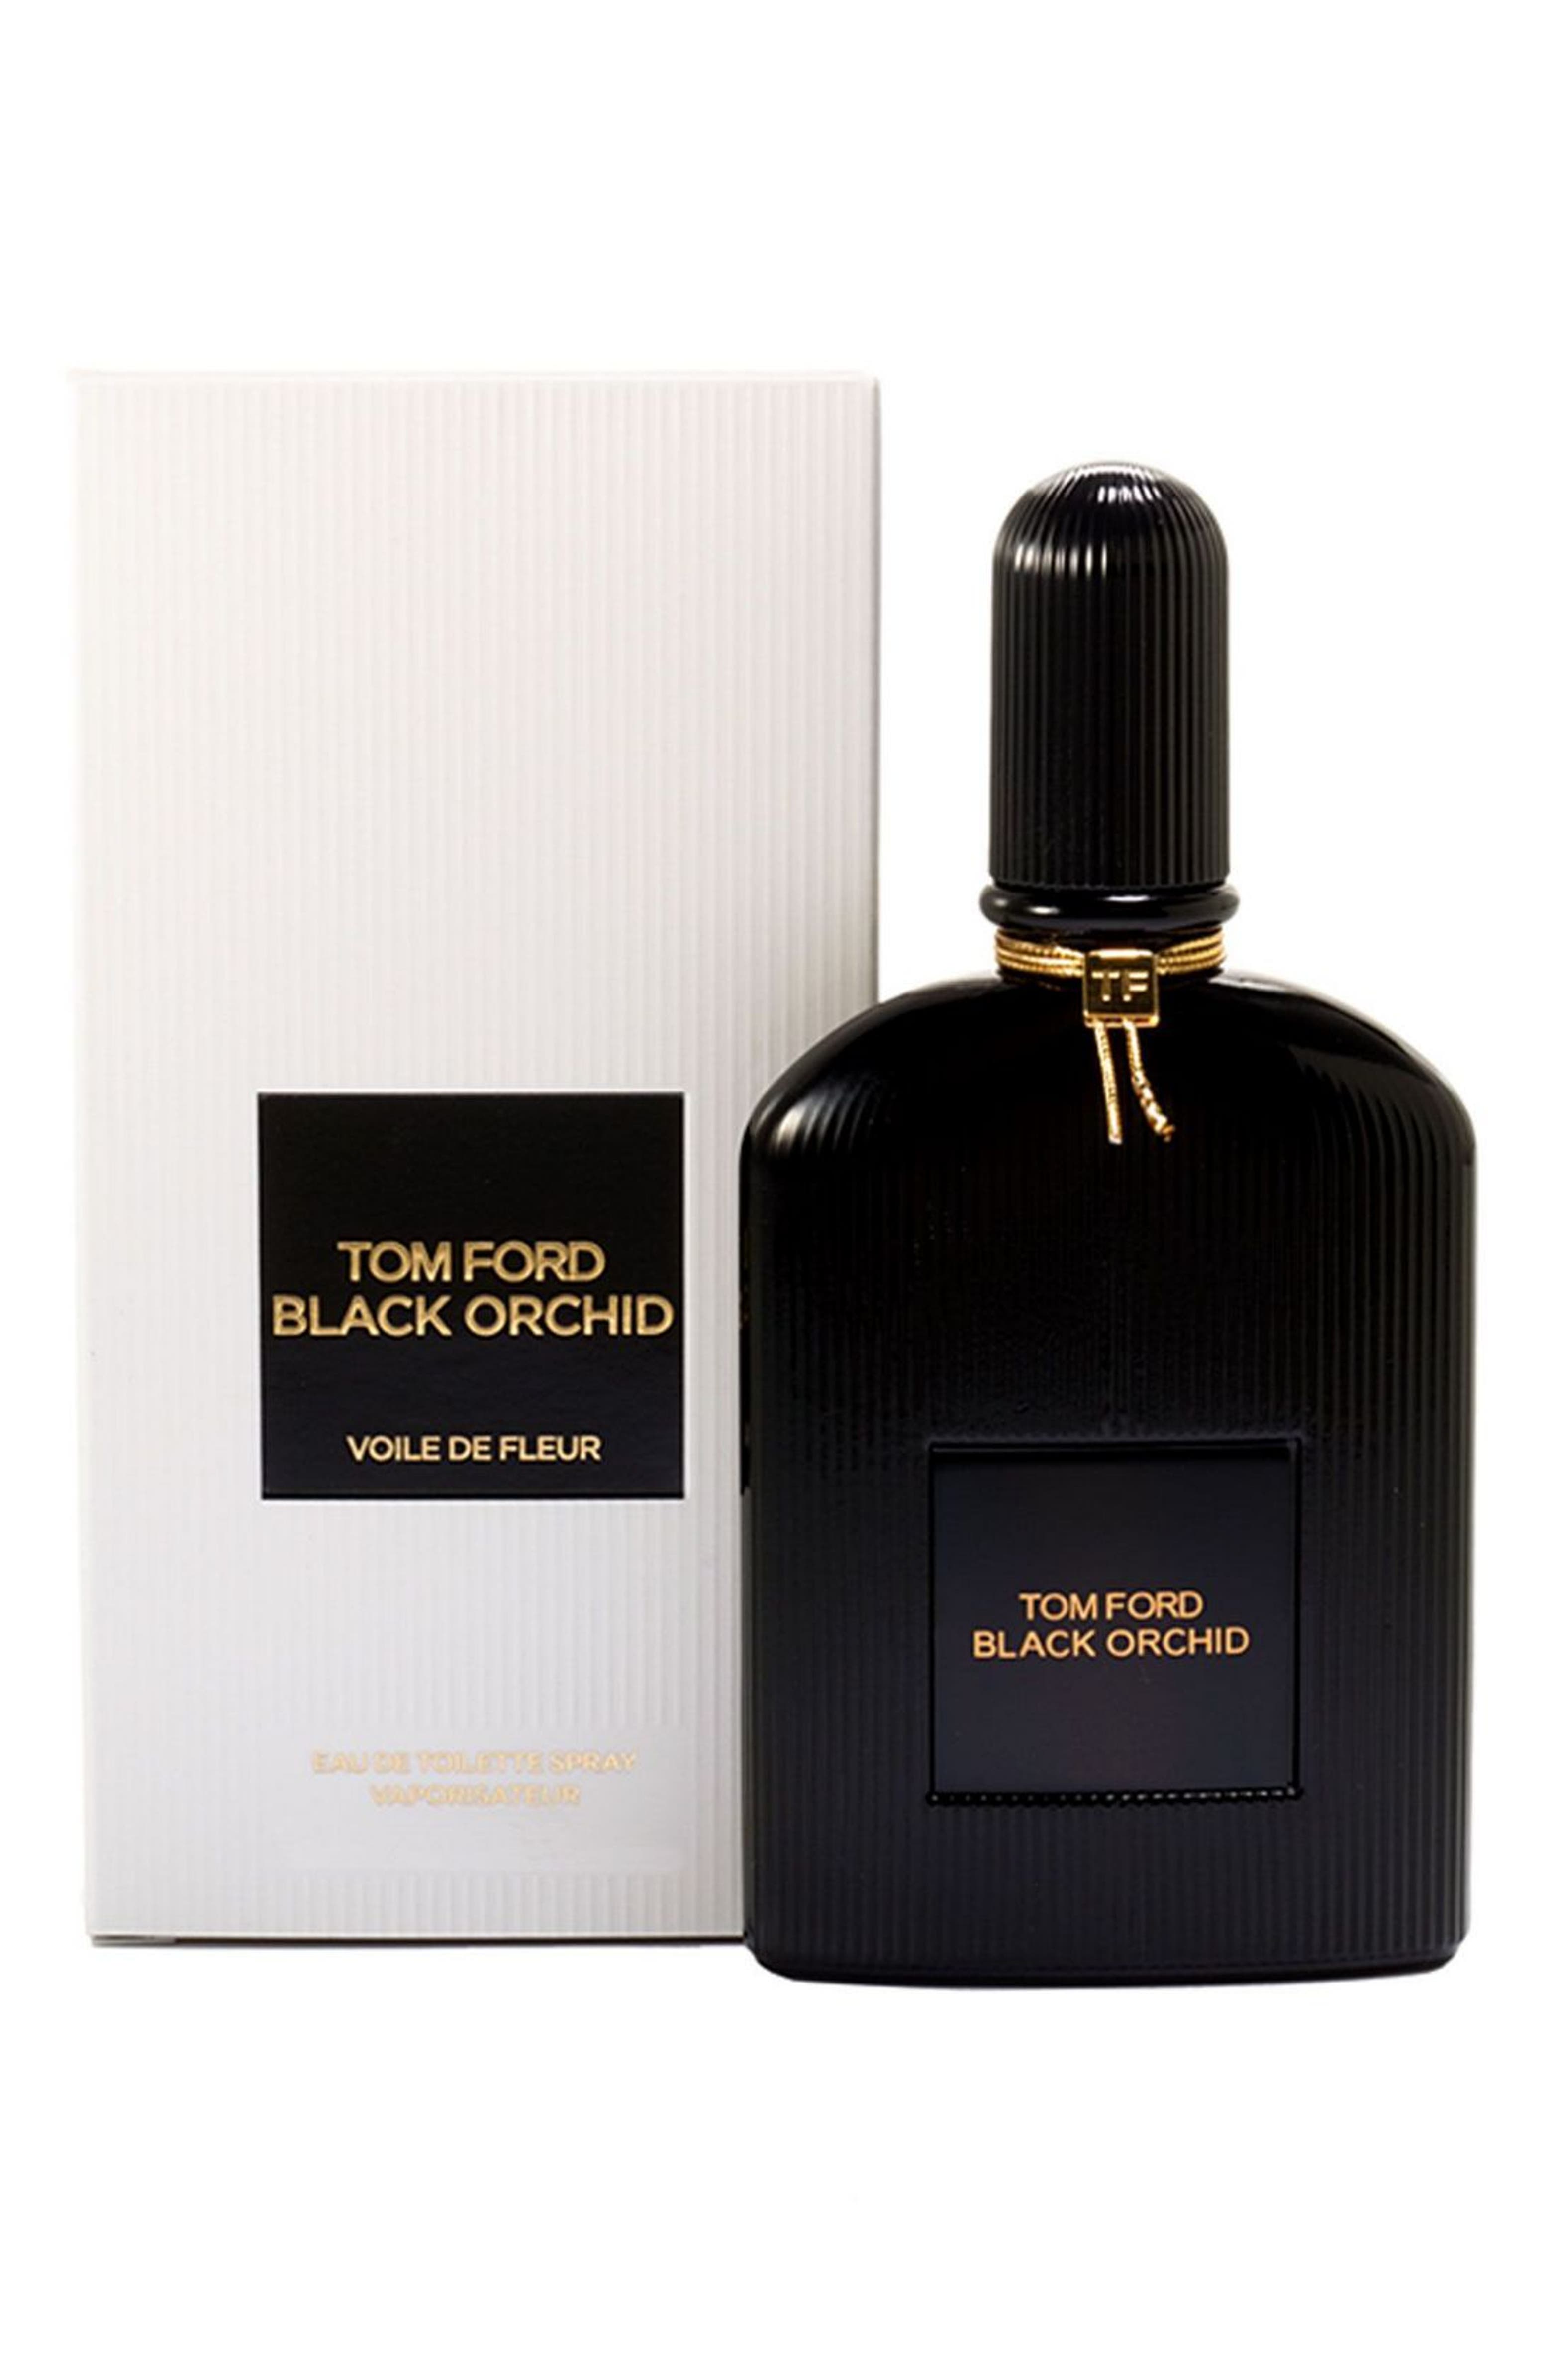 Tom Ford 'Black Orchid Voile de Fleur' Eau de Toilette